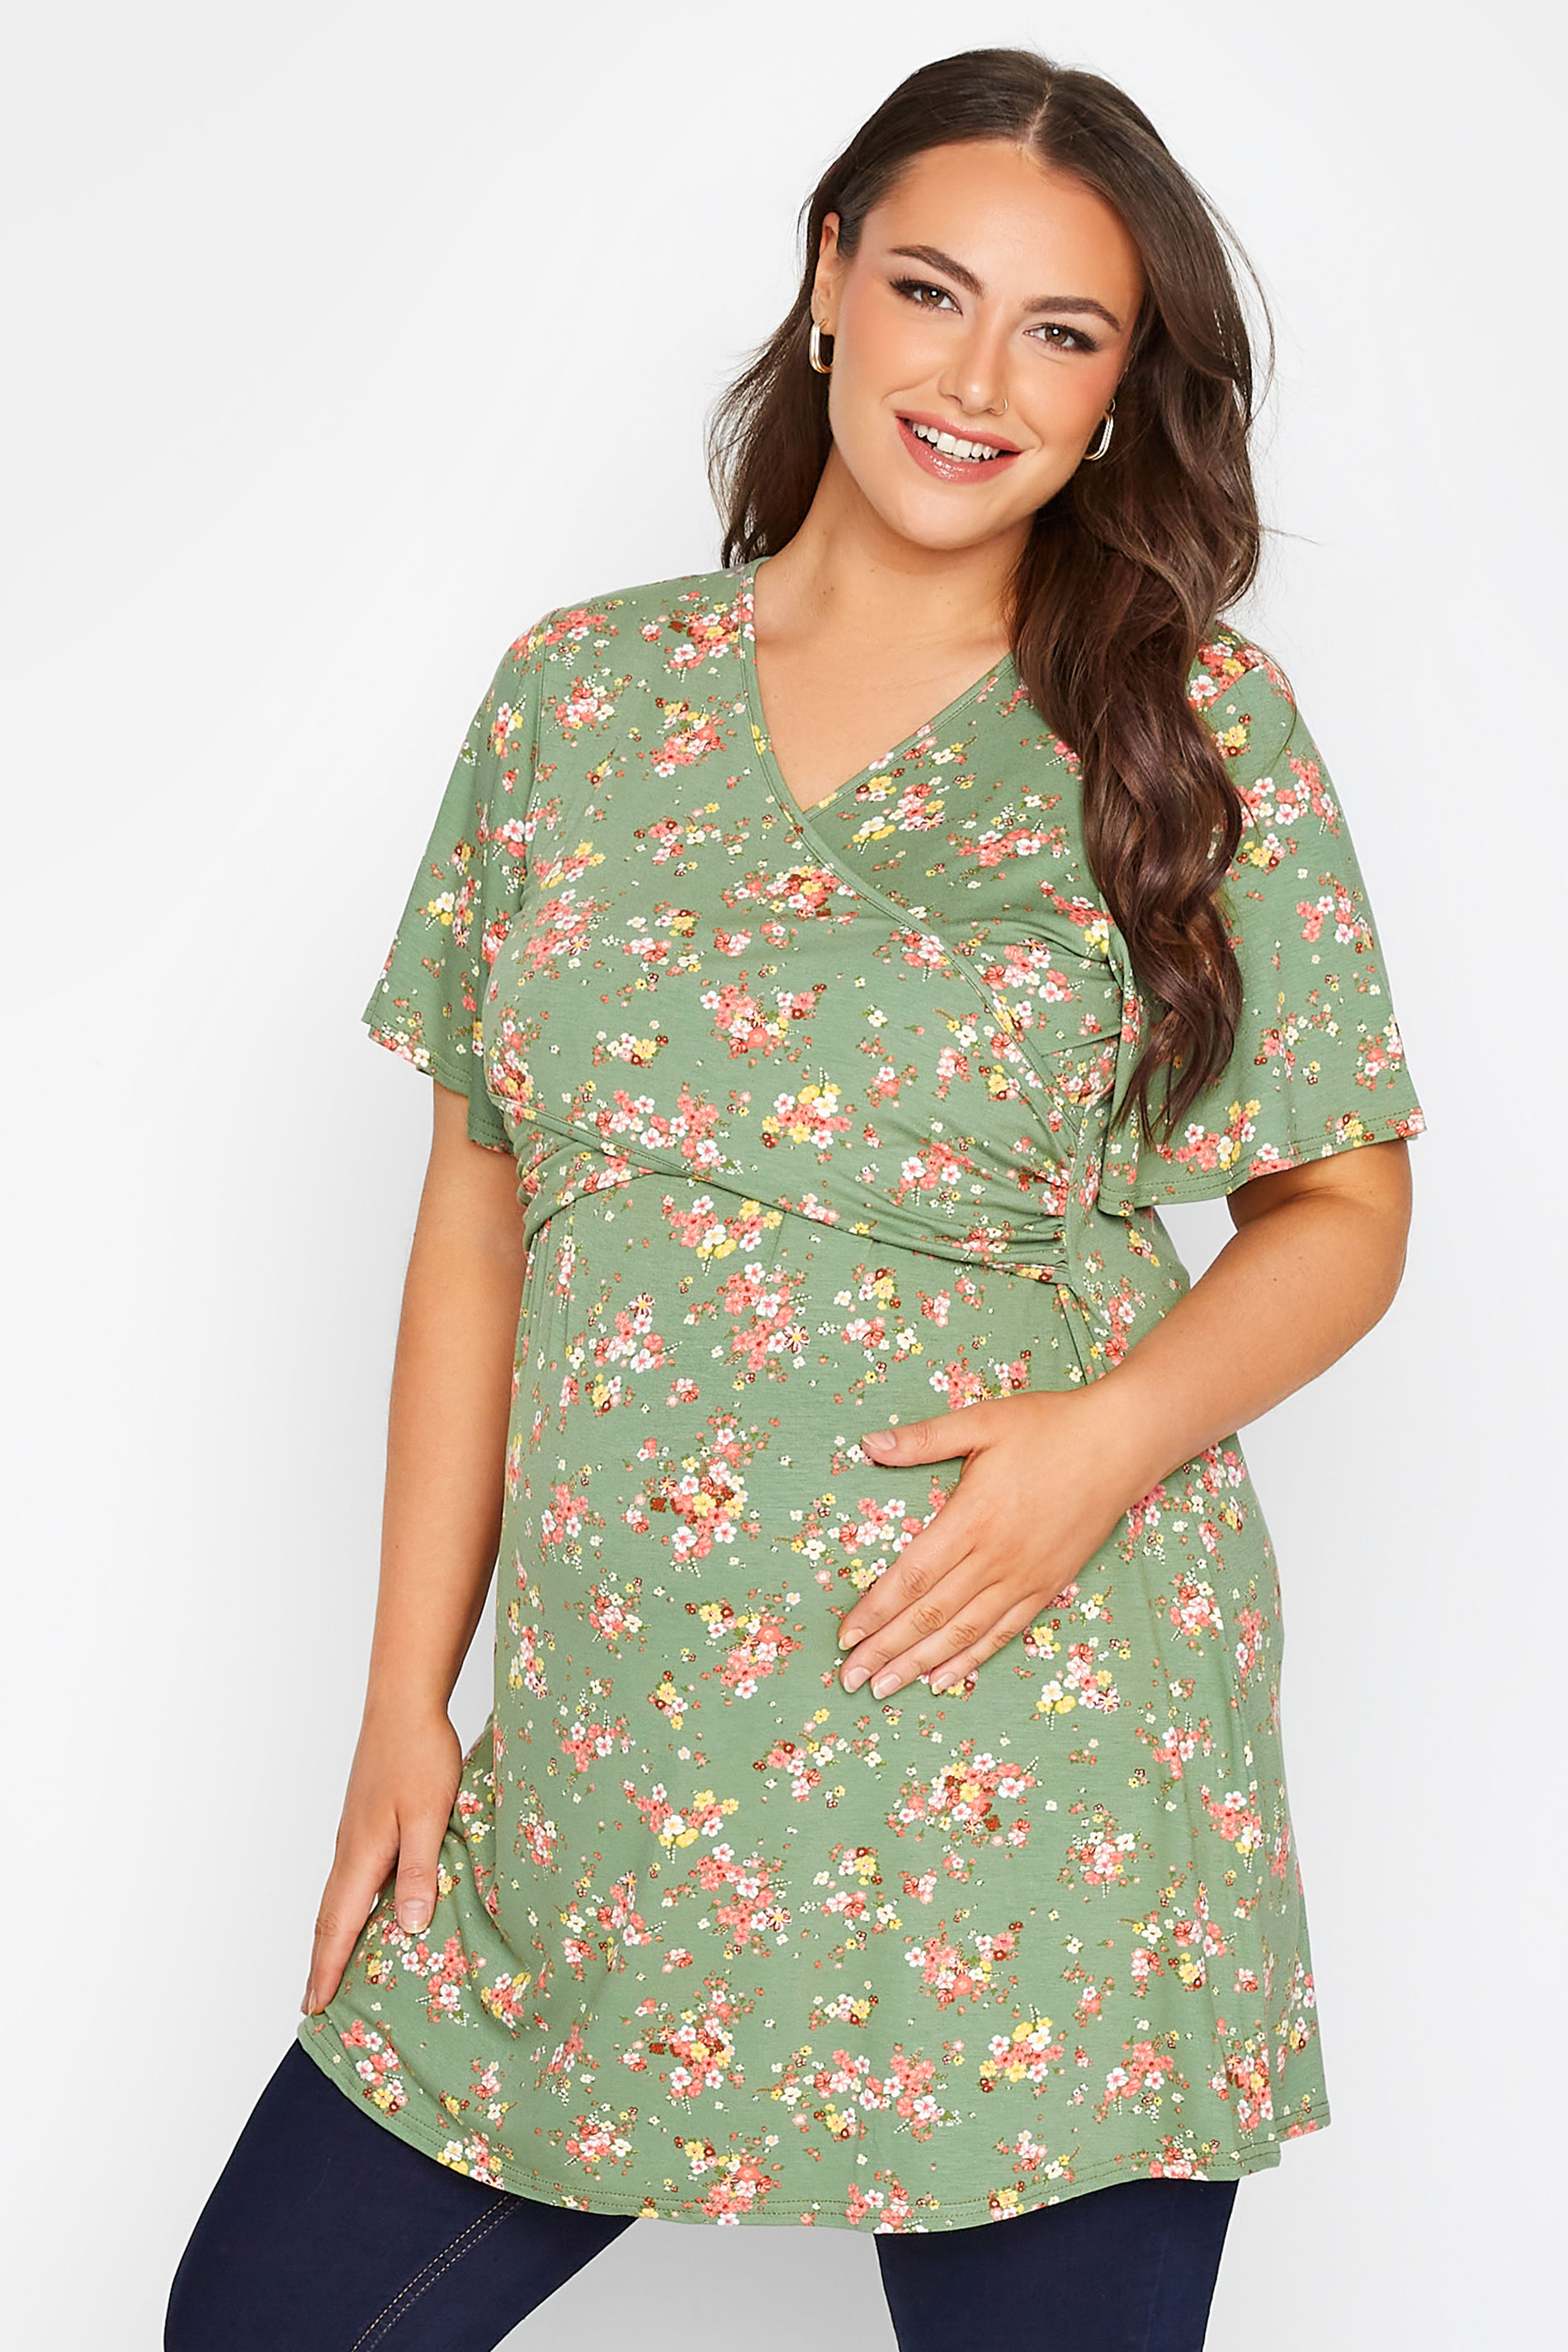 Grande taille  Vêtements de Grossesse Grande taille  Tops et t-shirts de grossesse | BUMP IT UP MATERNITY Curve Green Floral Nursing Top - VH02328